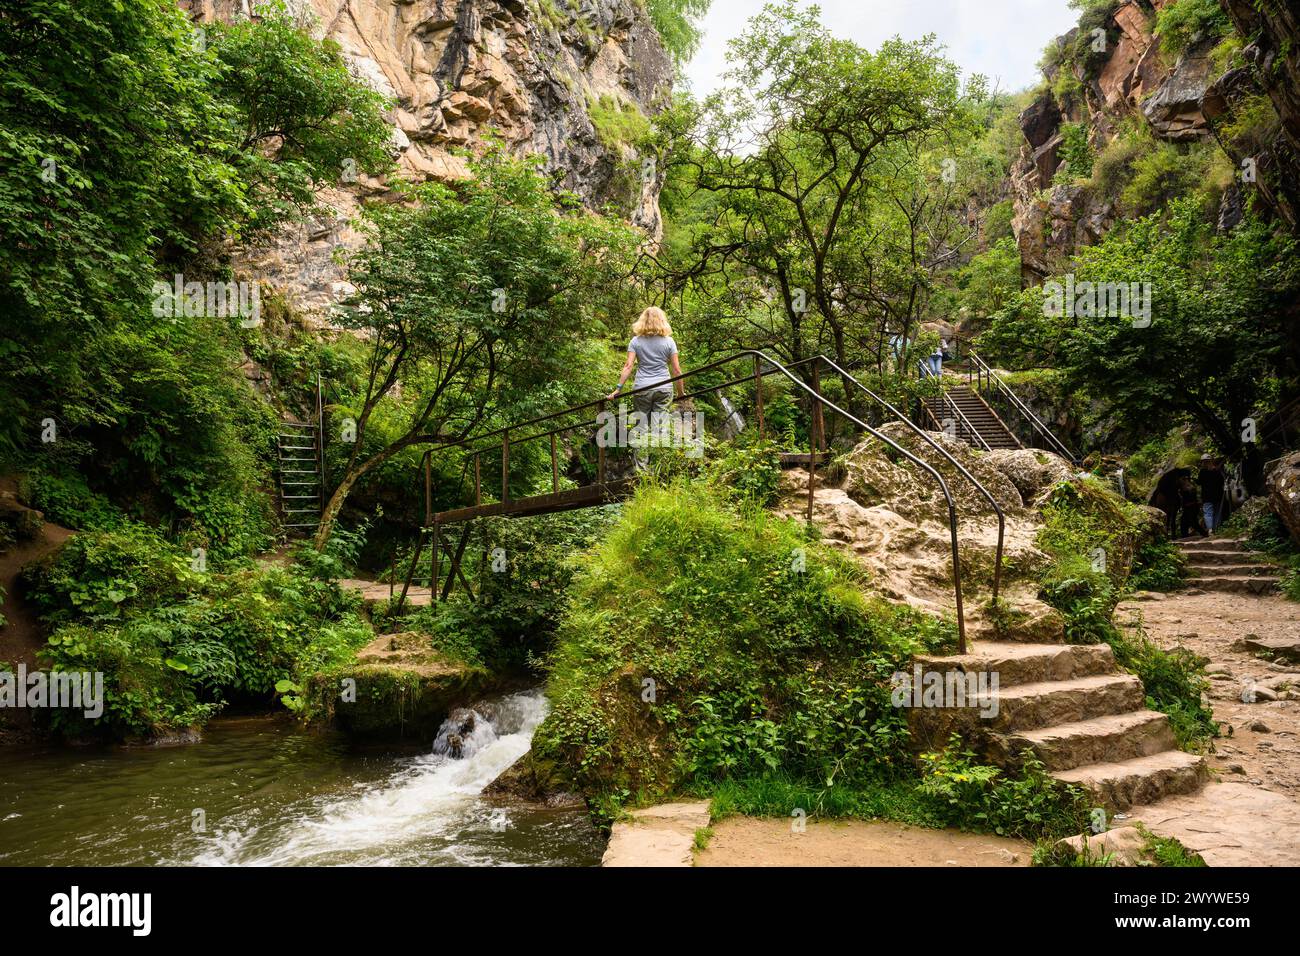 Malerischer Canyon bei Honey Waterfalls in der Nähe von Kislowodsk, Russland. Berglandschaft und Wanderer auf einer kleinen Brücke im Sommer. Natur-, Reise-, Tourismus-, Stockfoto